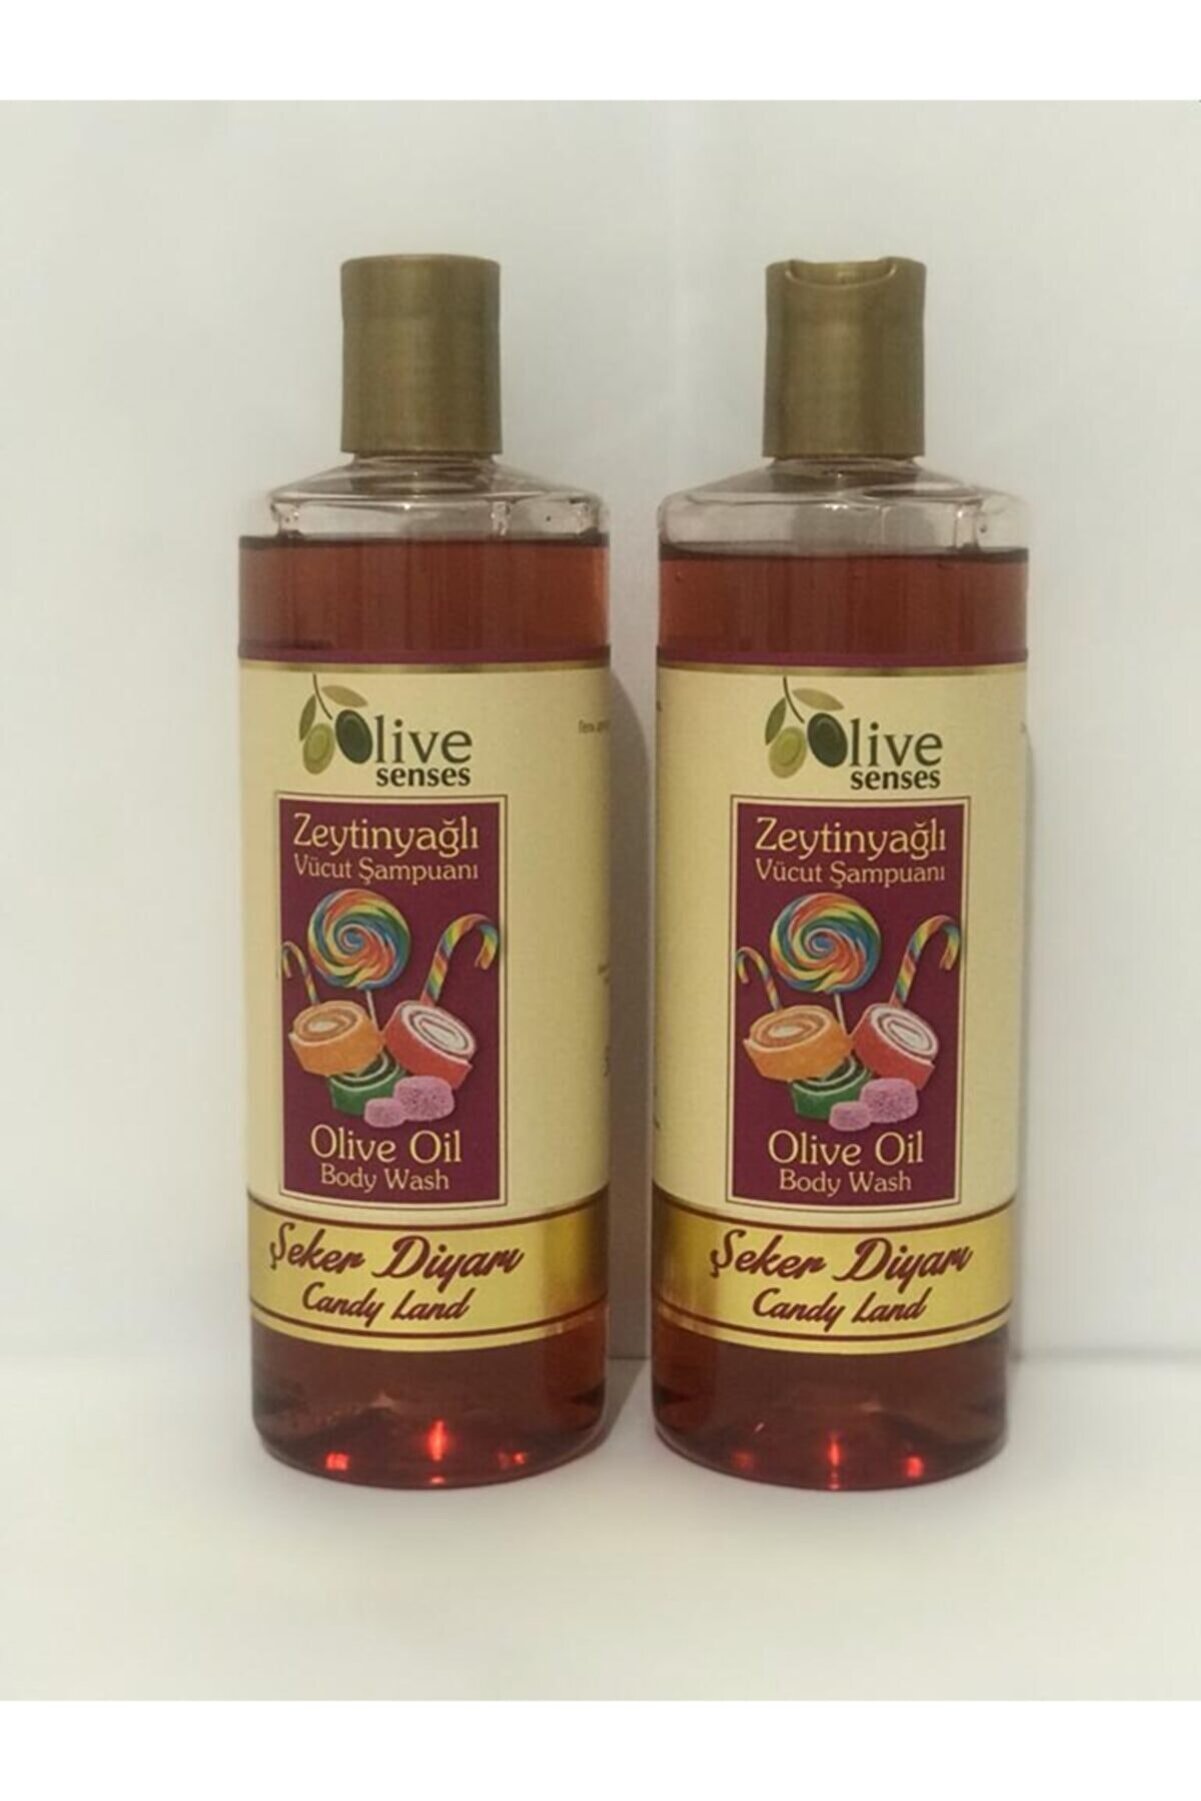 Oilive Olive Senses Zeytinyağlı Vücut Şampuanı Şeker Diyari 500ml 1 Alana 1 Bedava